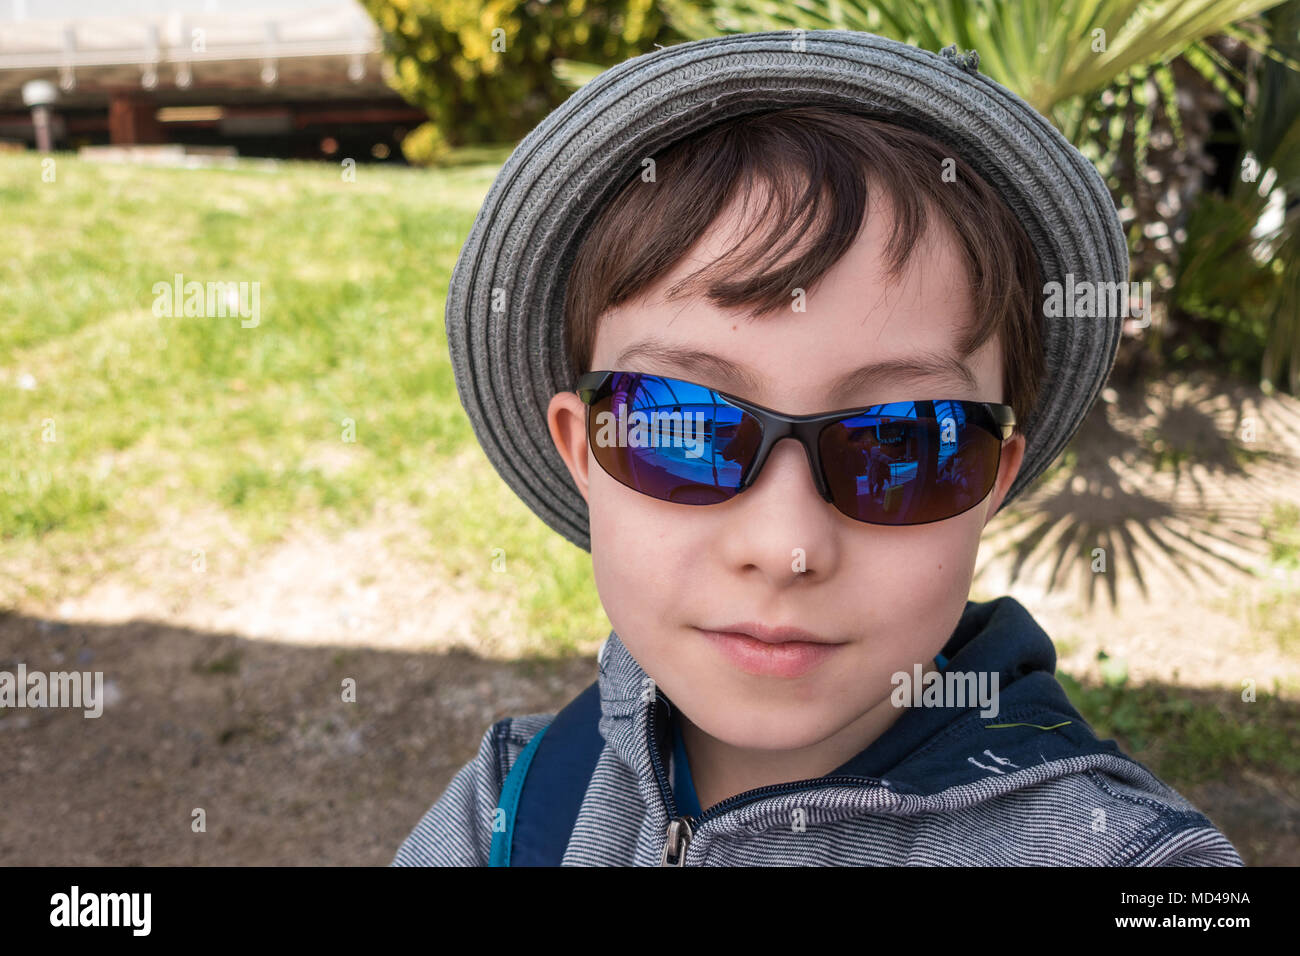 Un jeune garçon portant des lunettes pose pour une photo. Banque D'Images